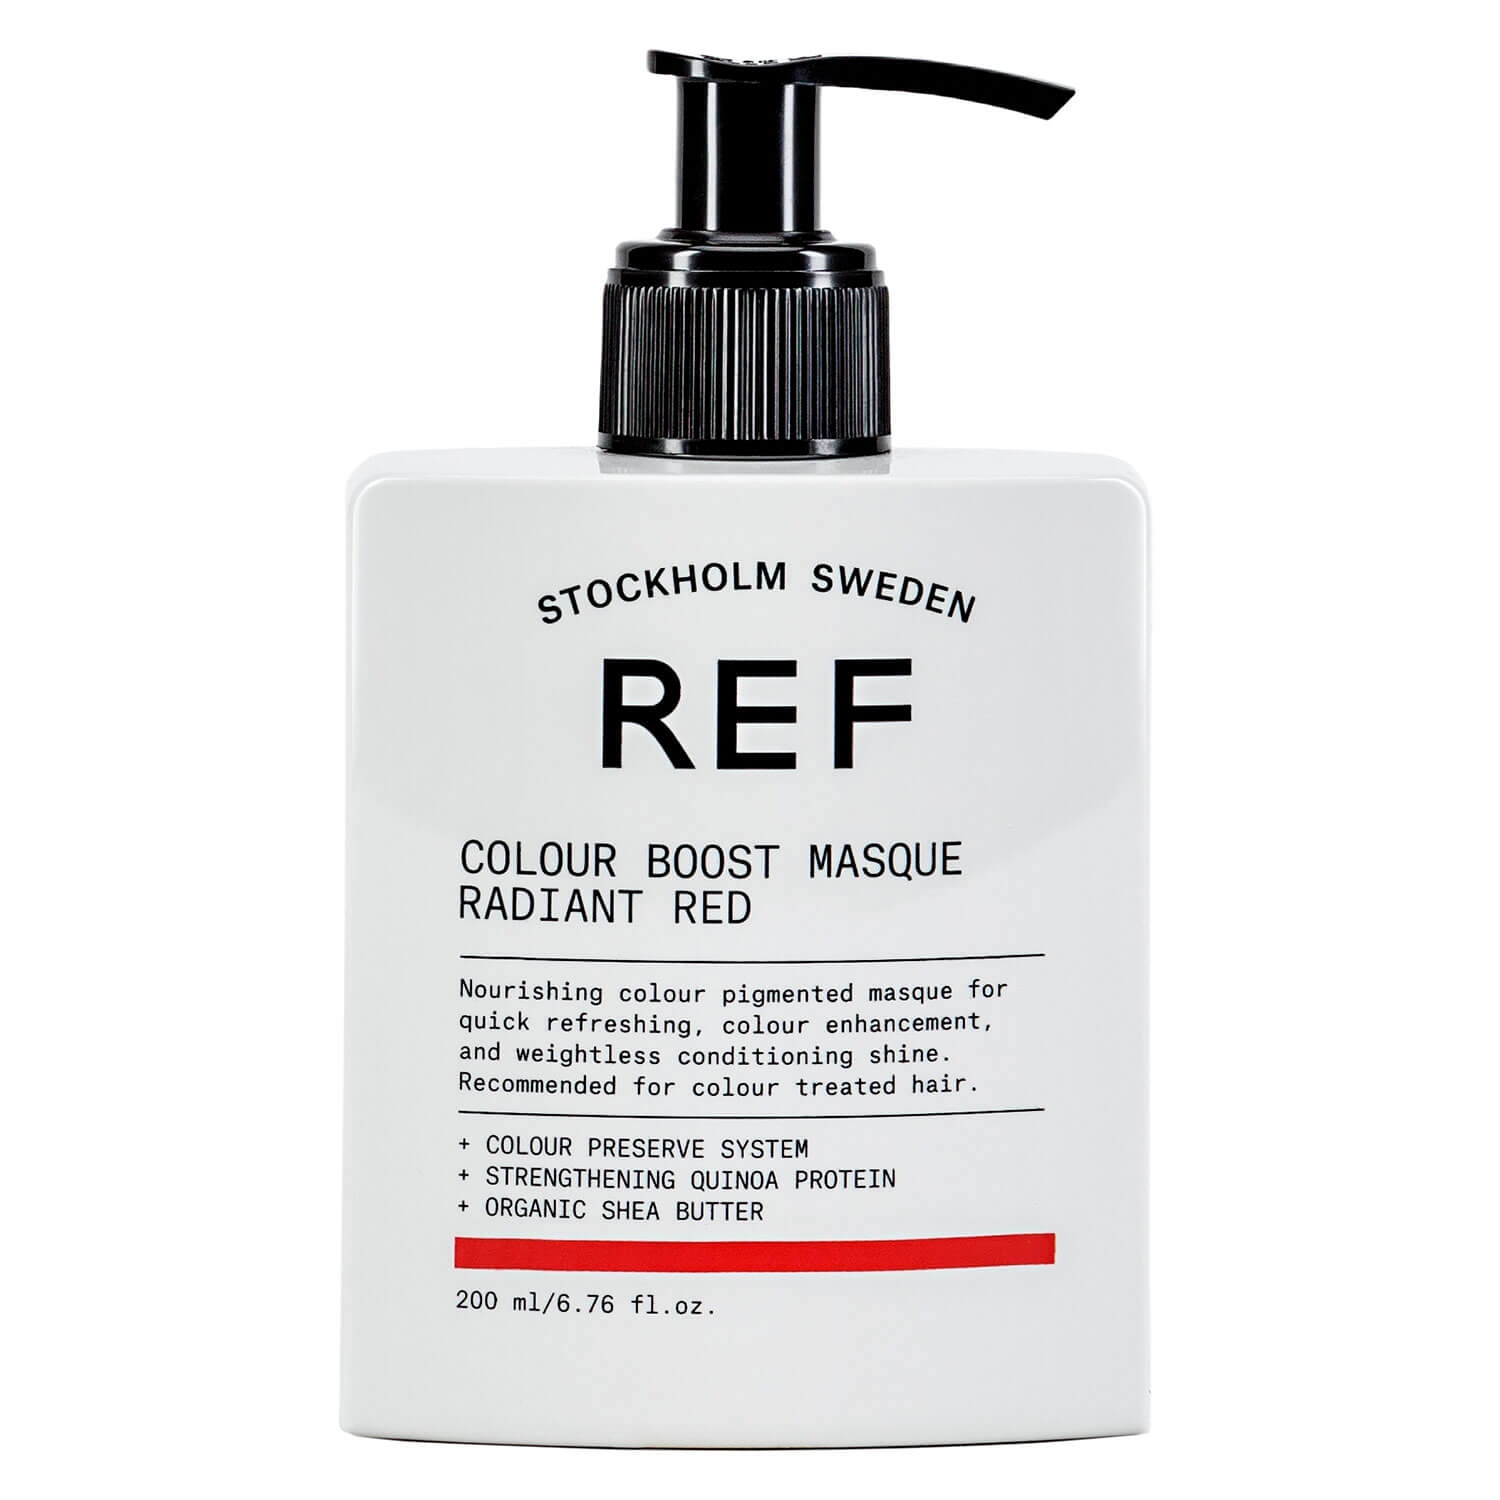 Produktbild von REF Treatment - Colour Boost Masque Radiant Red